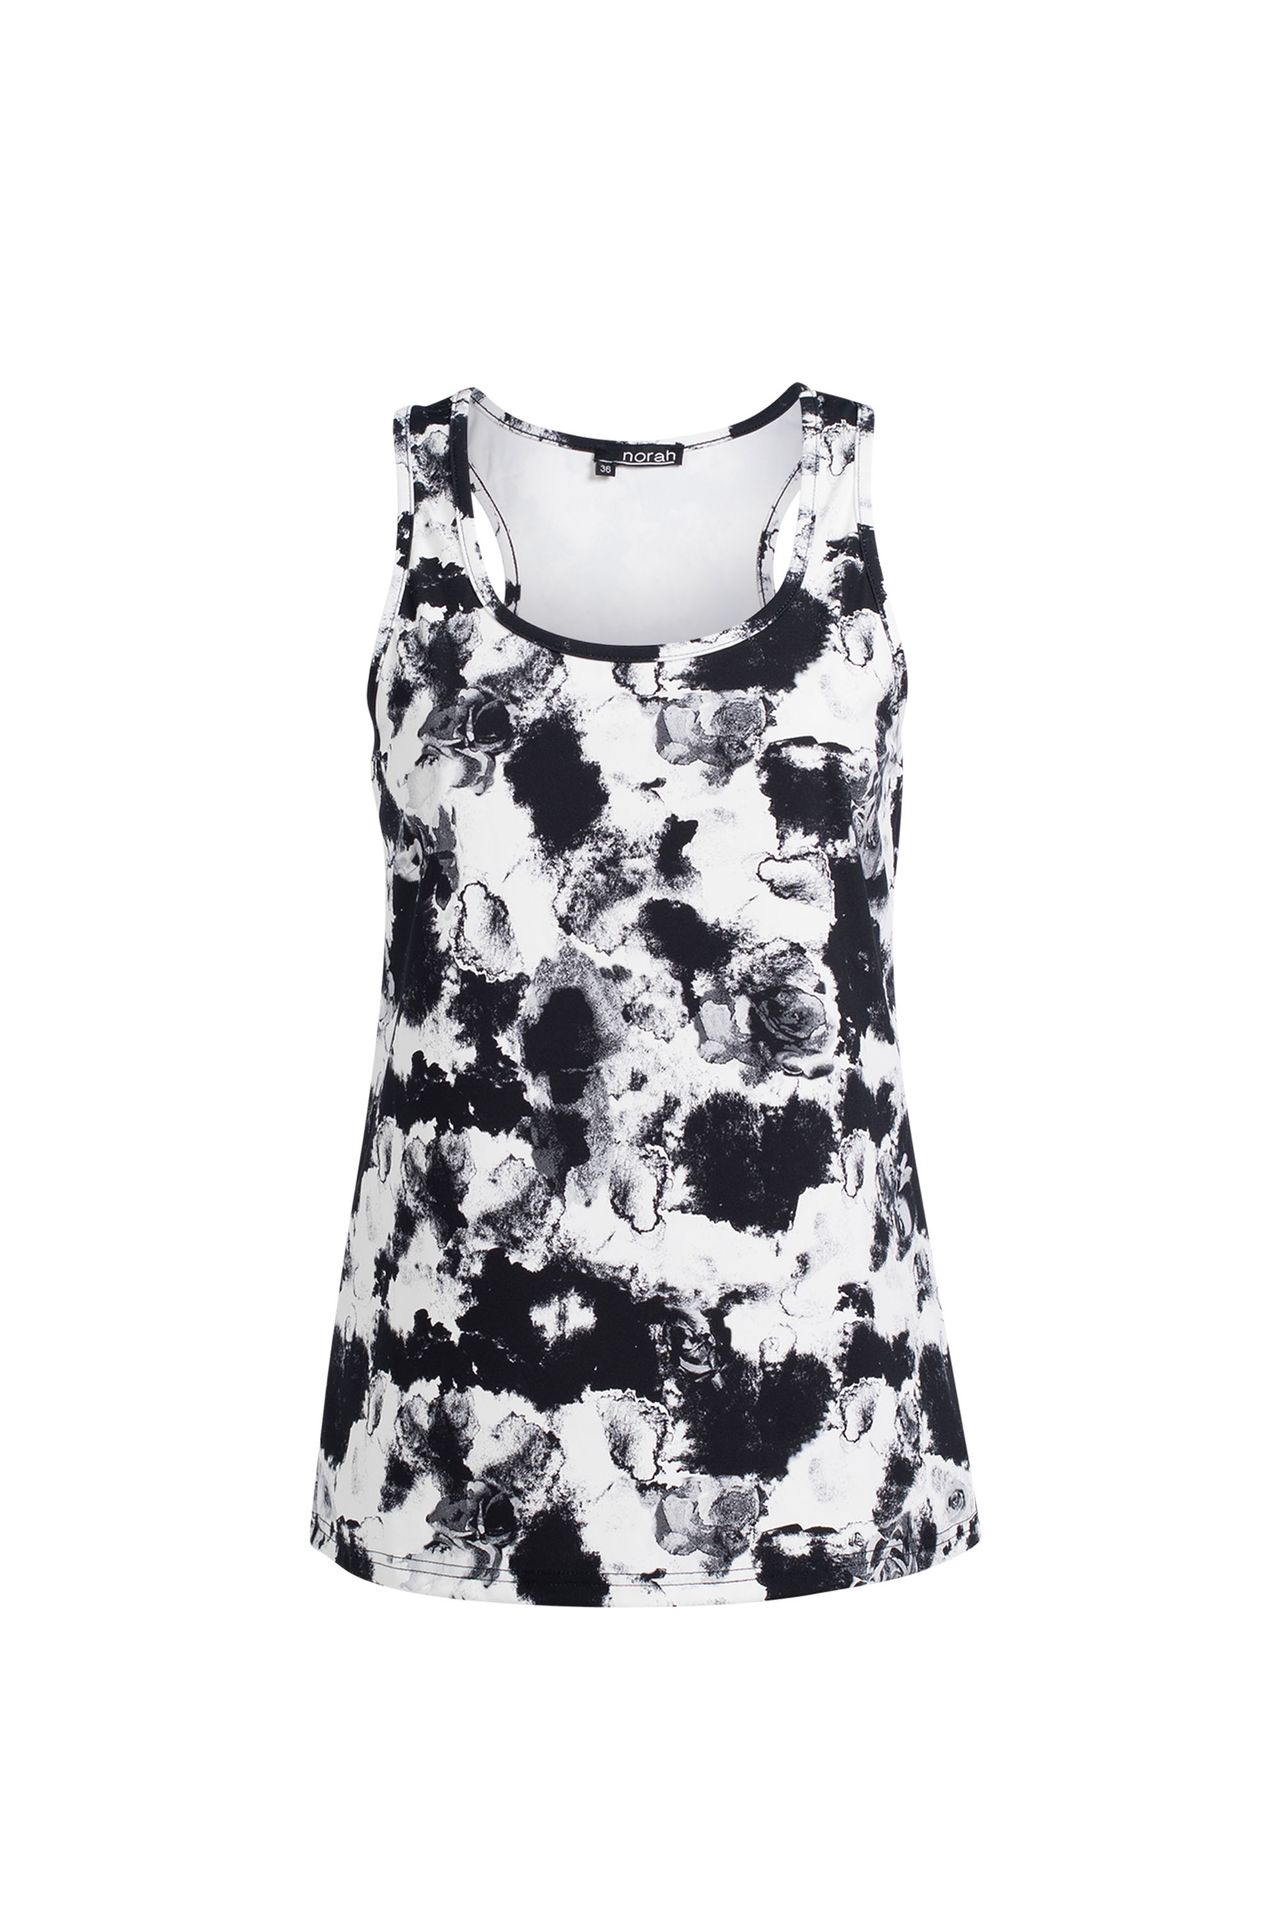 Norah Top - Activewear black/white 211806-031